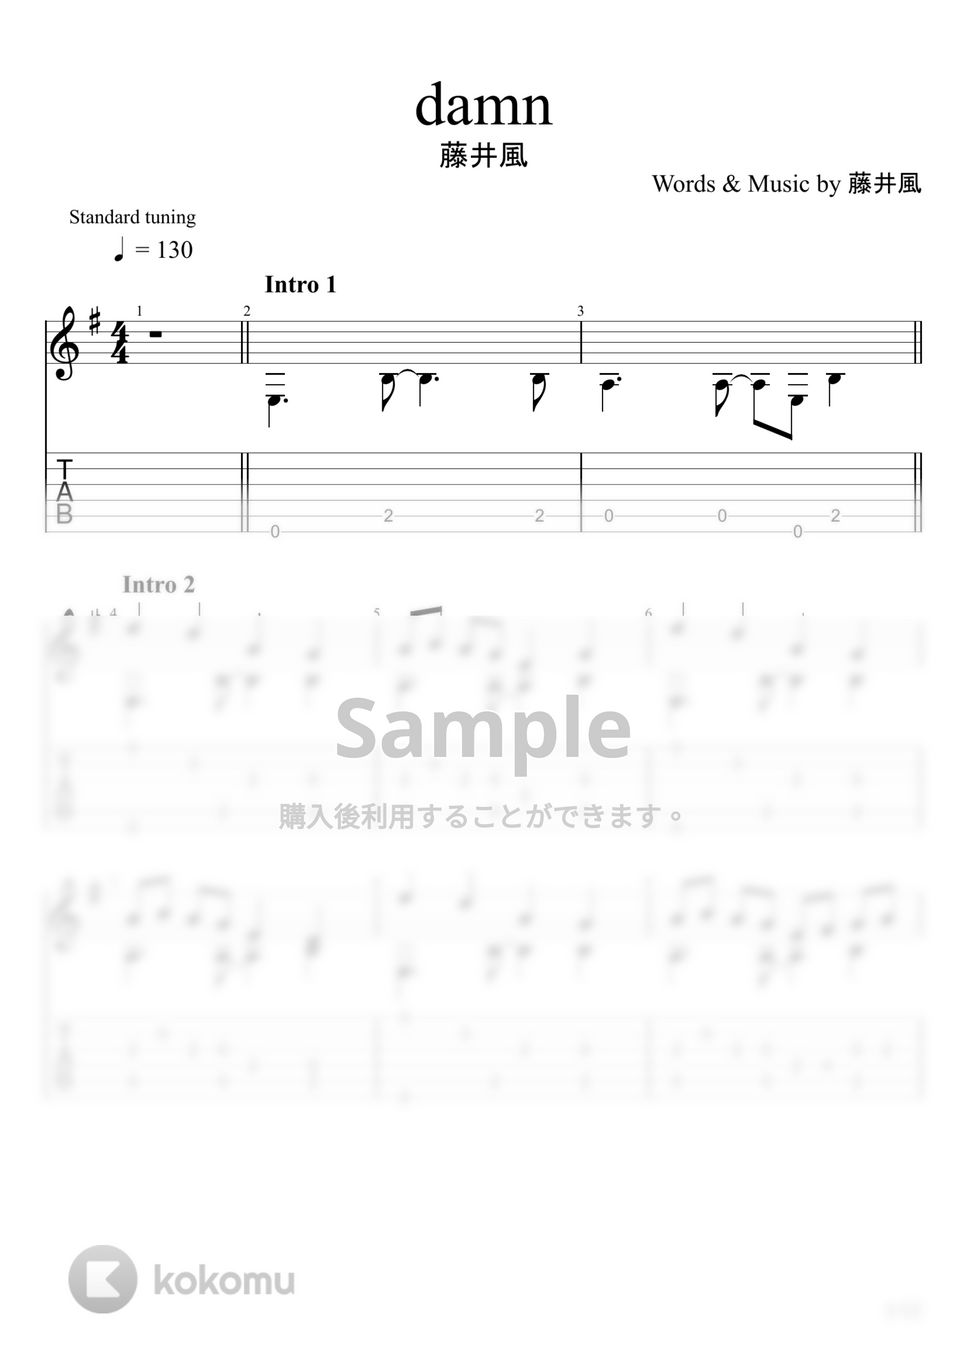 藤井風 - damn (ソロギター) by u3danchou